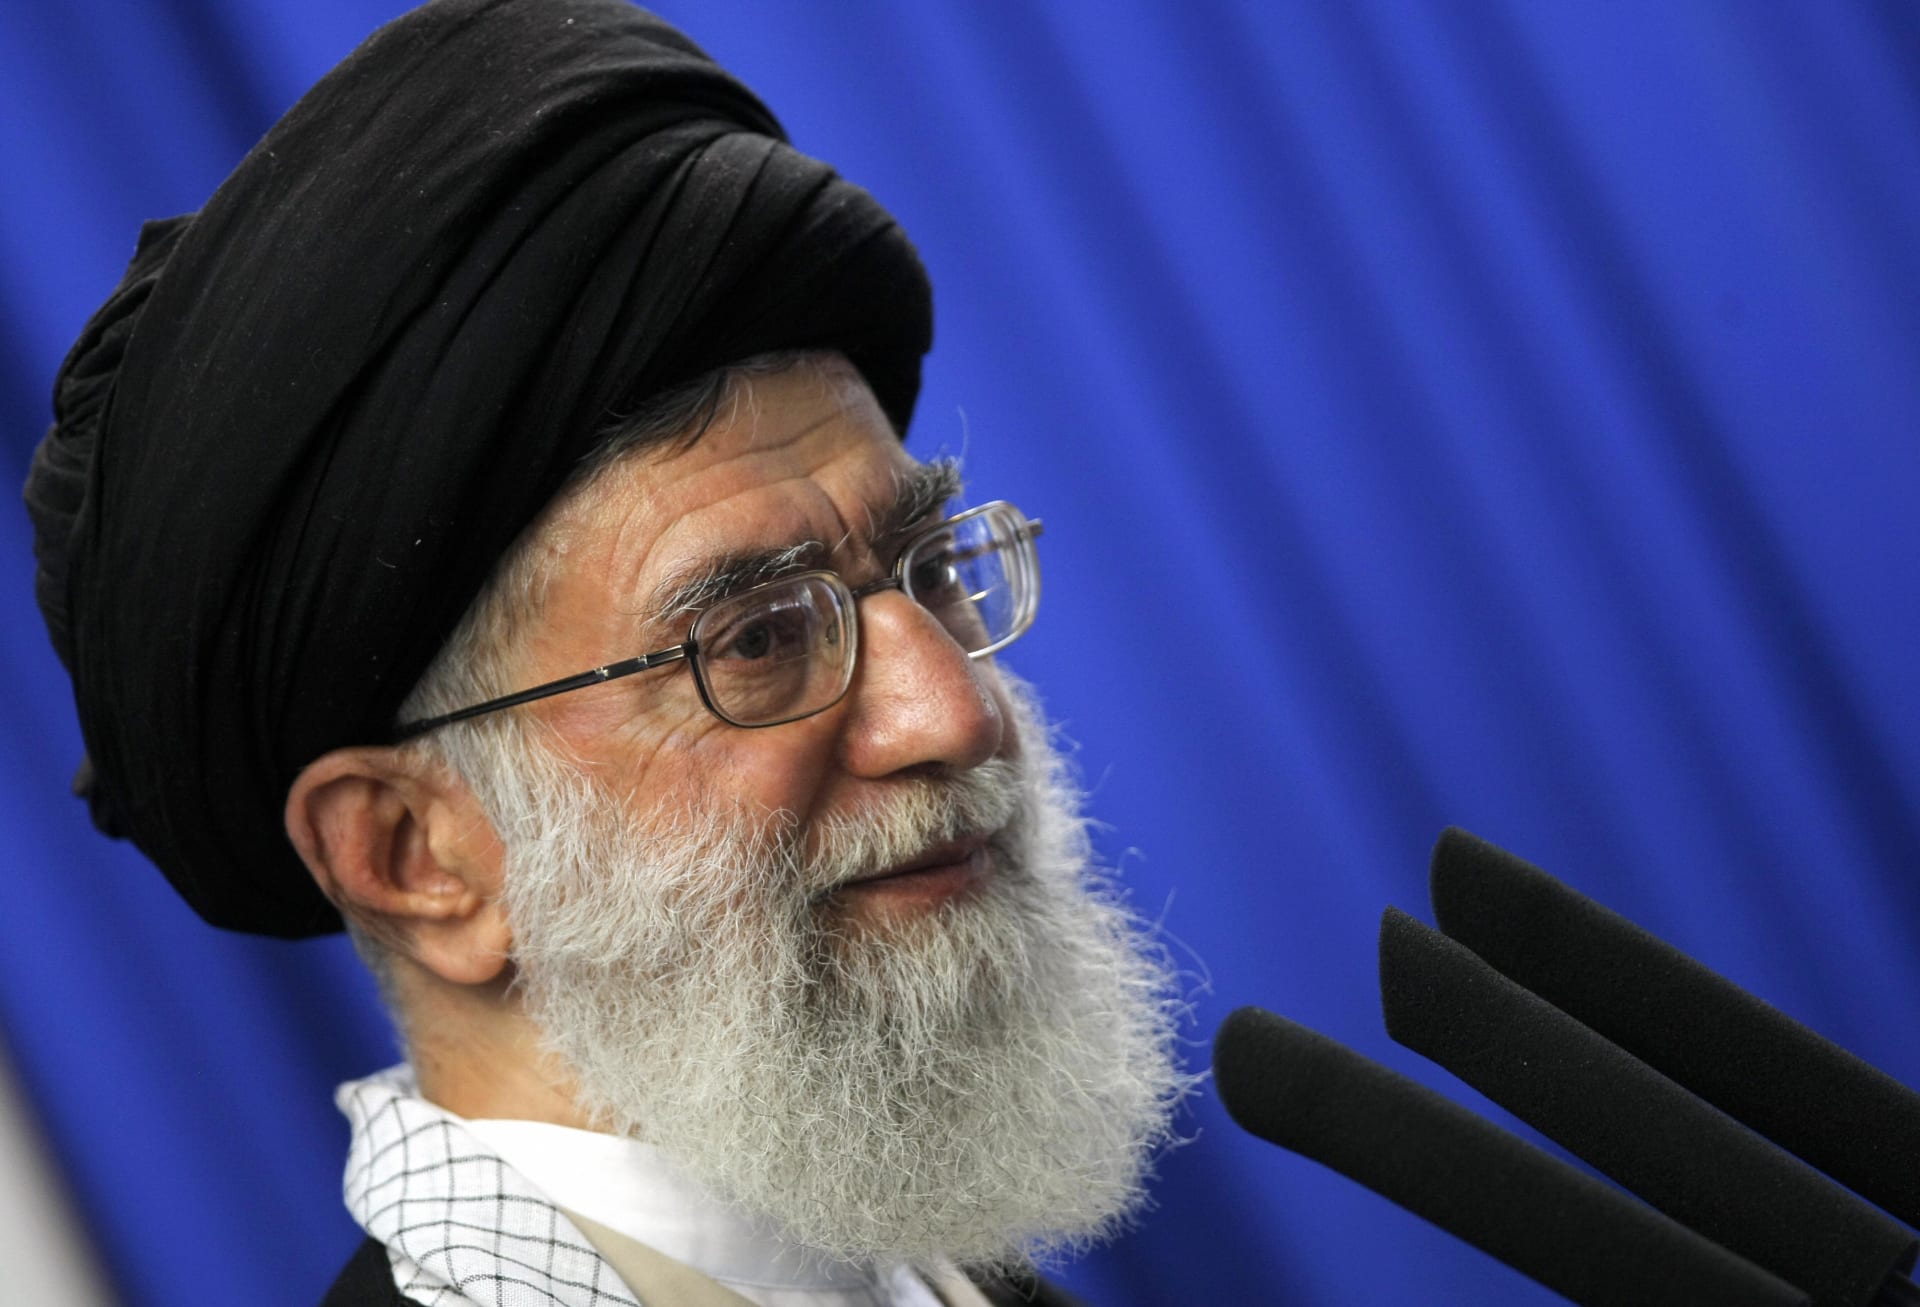 خامنئي يؤكد استعداد إيران لرفع التخصيب إلى 60%.. ورئيس مجلس الشورى يعلن وقف تنفيذ "البروتوكول الإضافي" من الثلاثاء